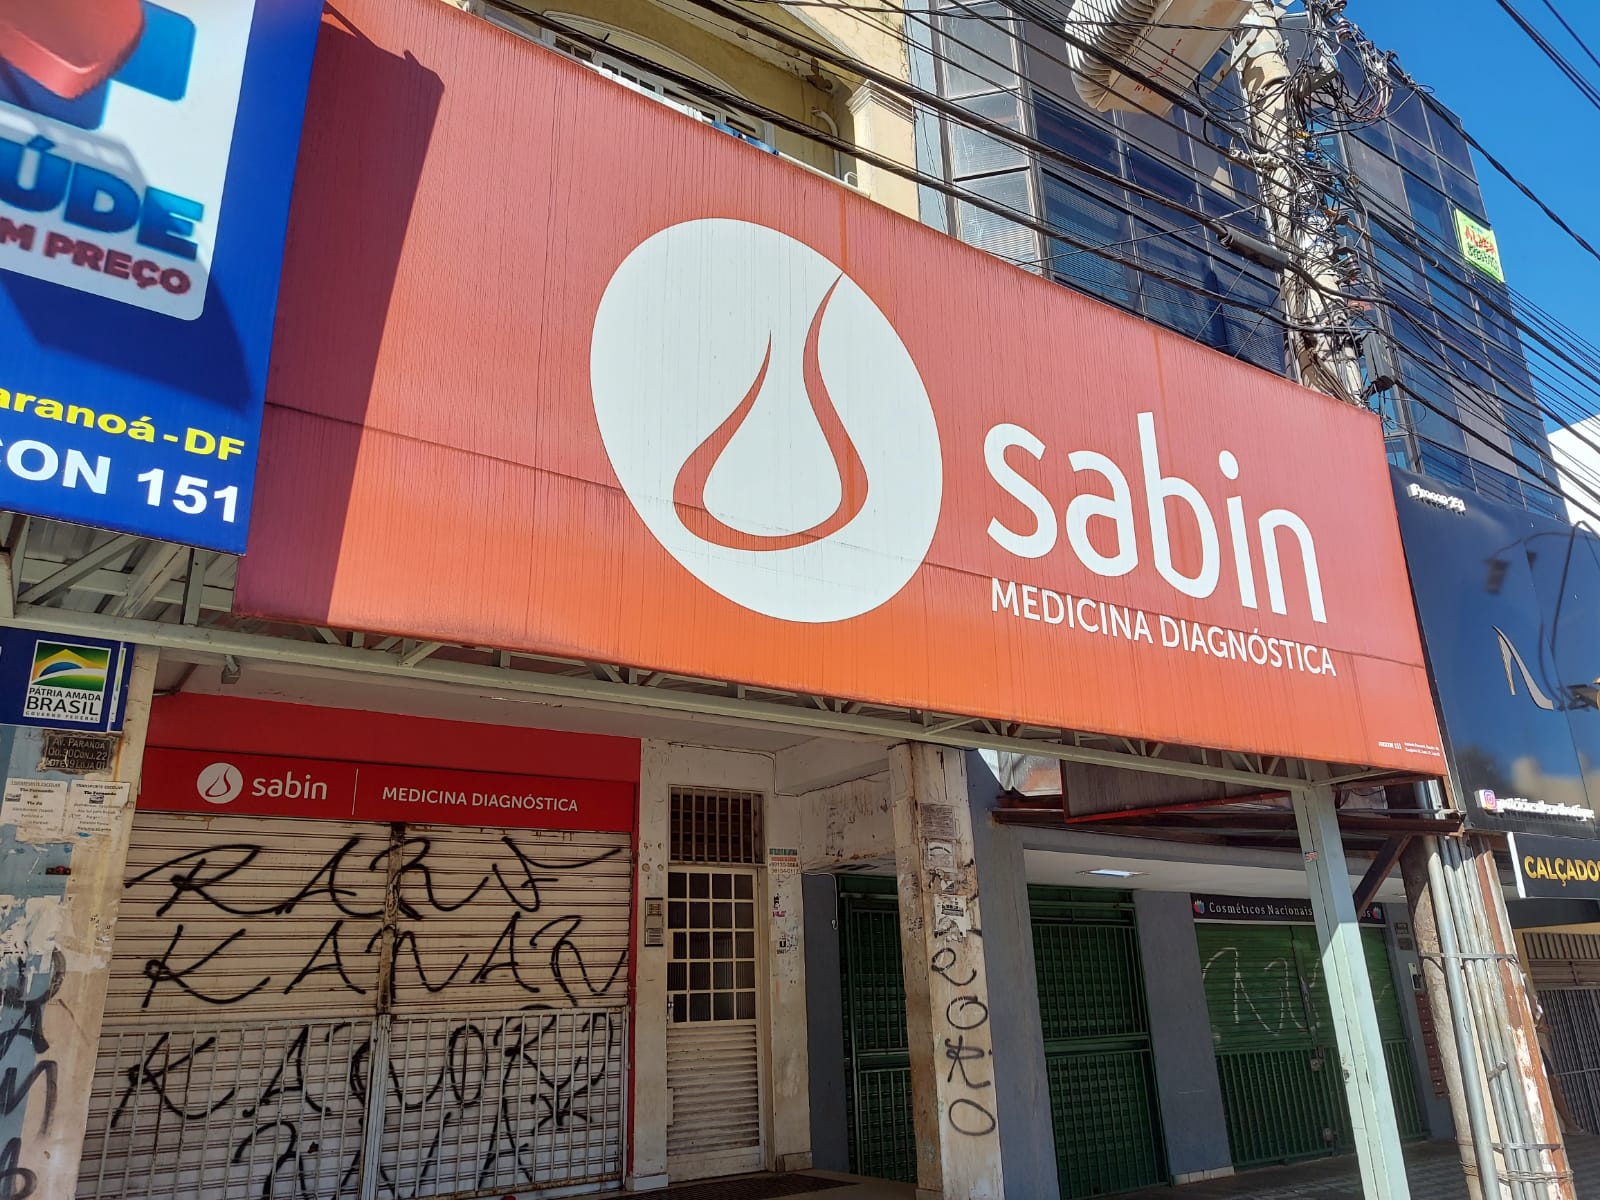 Laboratório Sabin Medicina Diagnóstica Avenida Paranoá, Comércio do Paranoá, Comércio Brasília